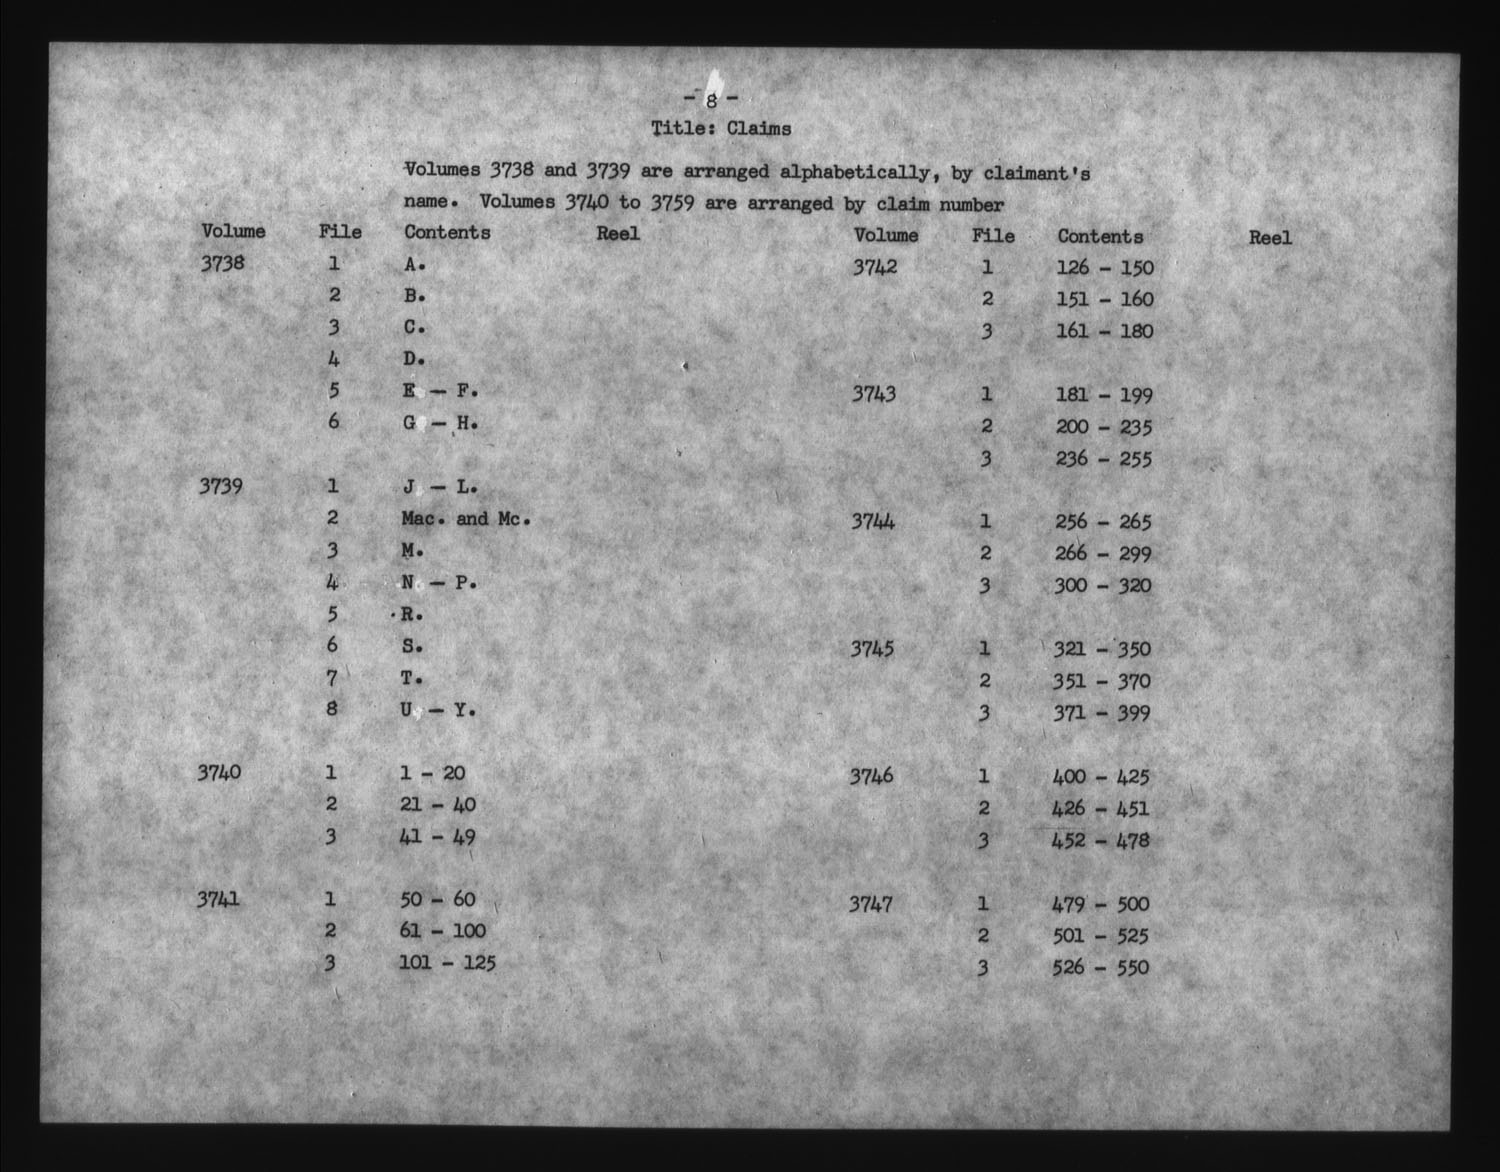 Titre : Guerre de 1812 : Commission des rclamations pour pertes subies, 1813-1848, RG 19 E5A - N d'enregistrement Mikan : 163603 - Microforme : t-1143